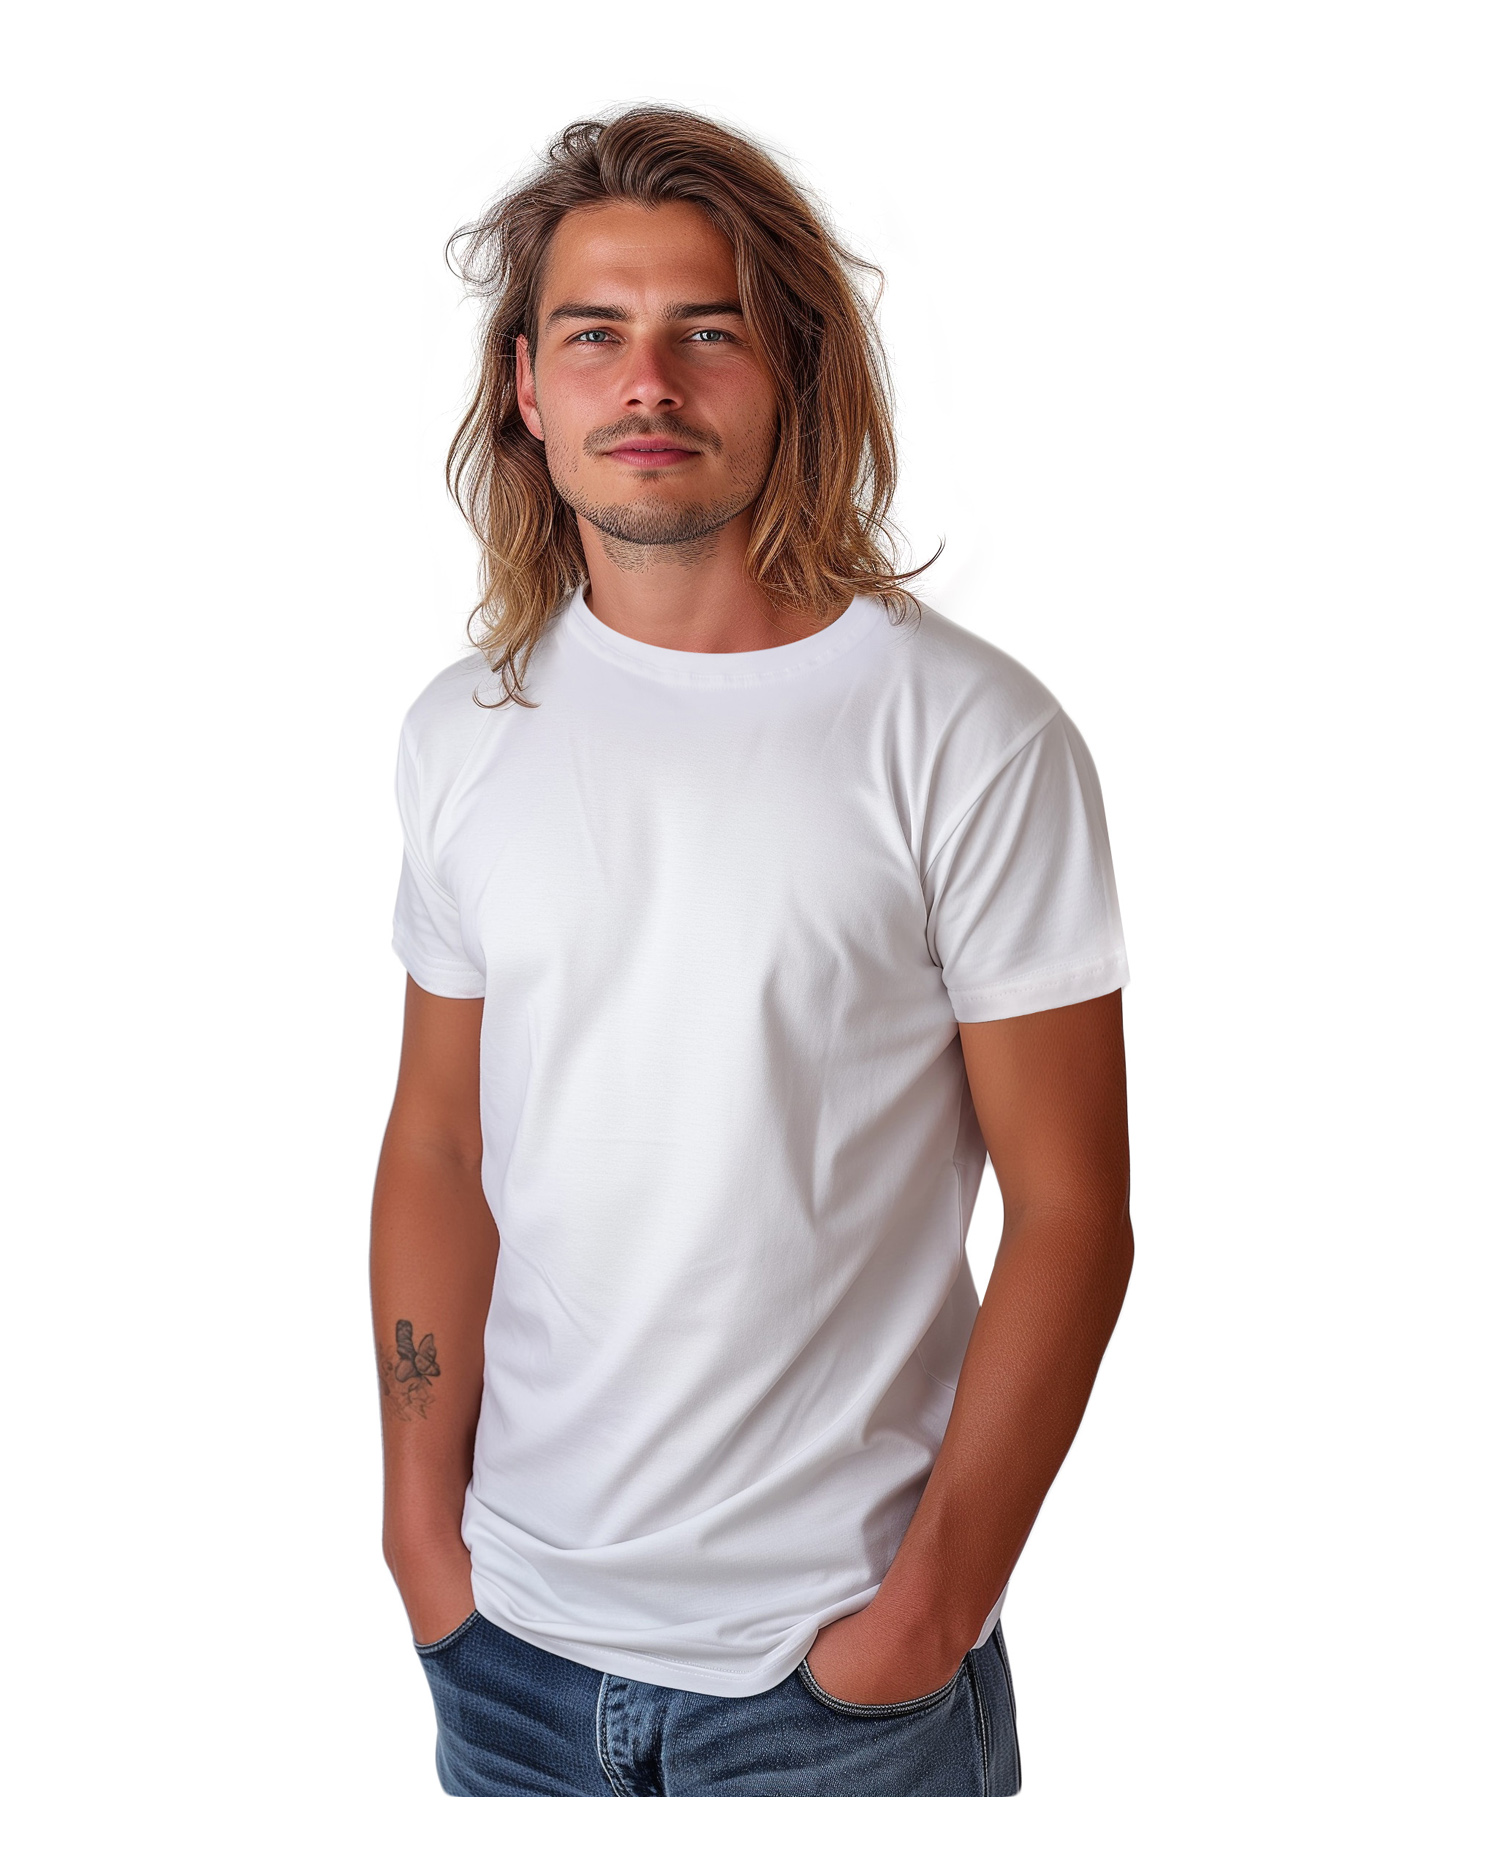 Pánské tričko Marek, krátký rukáv, bílé